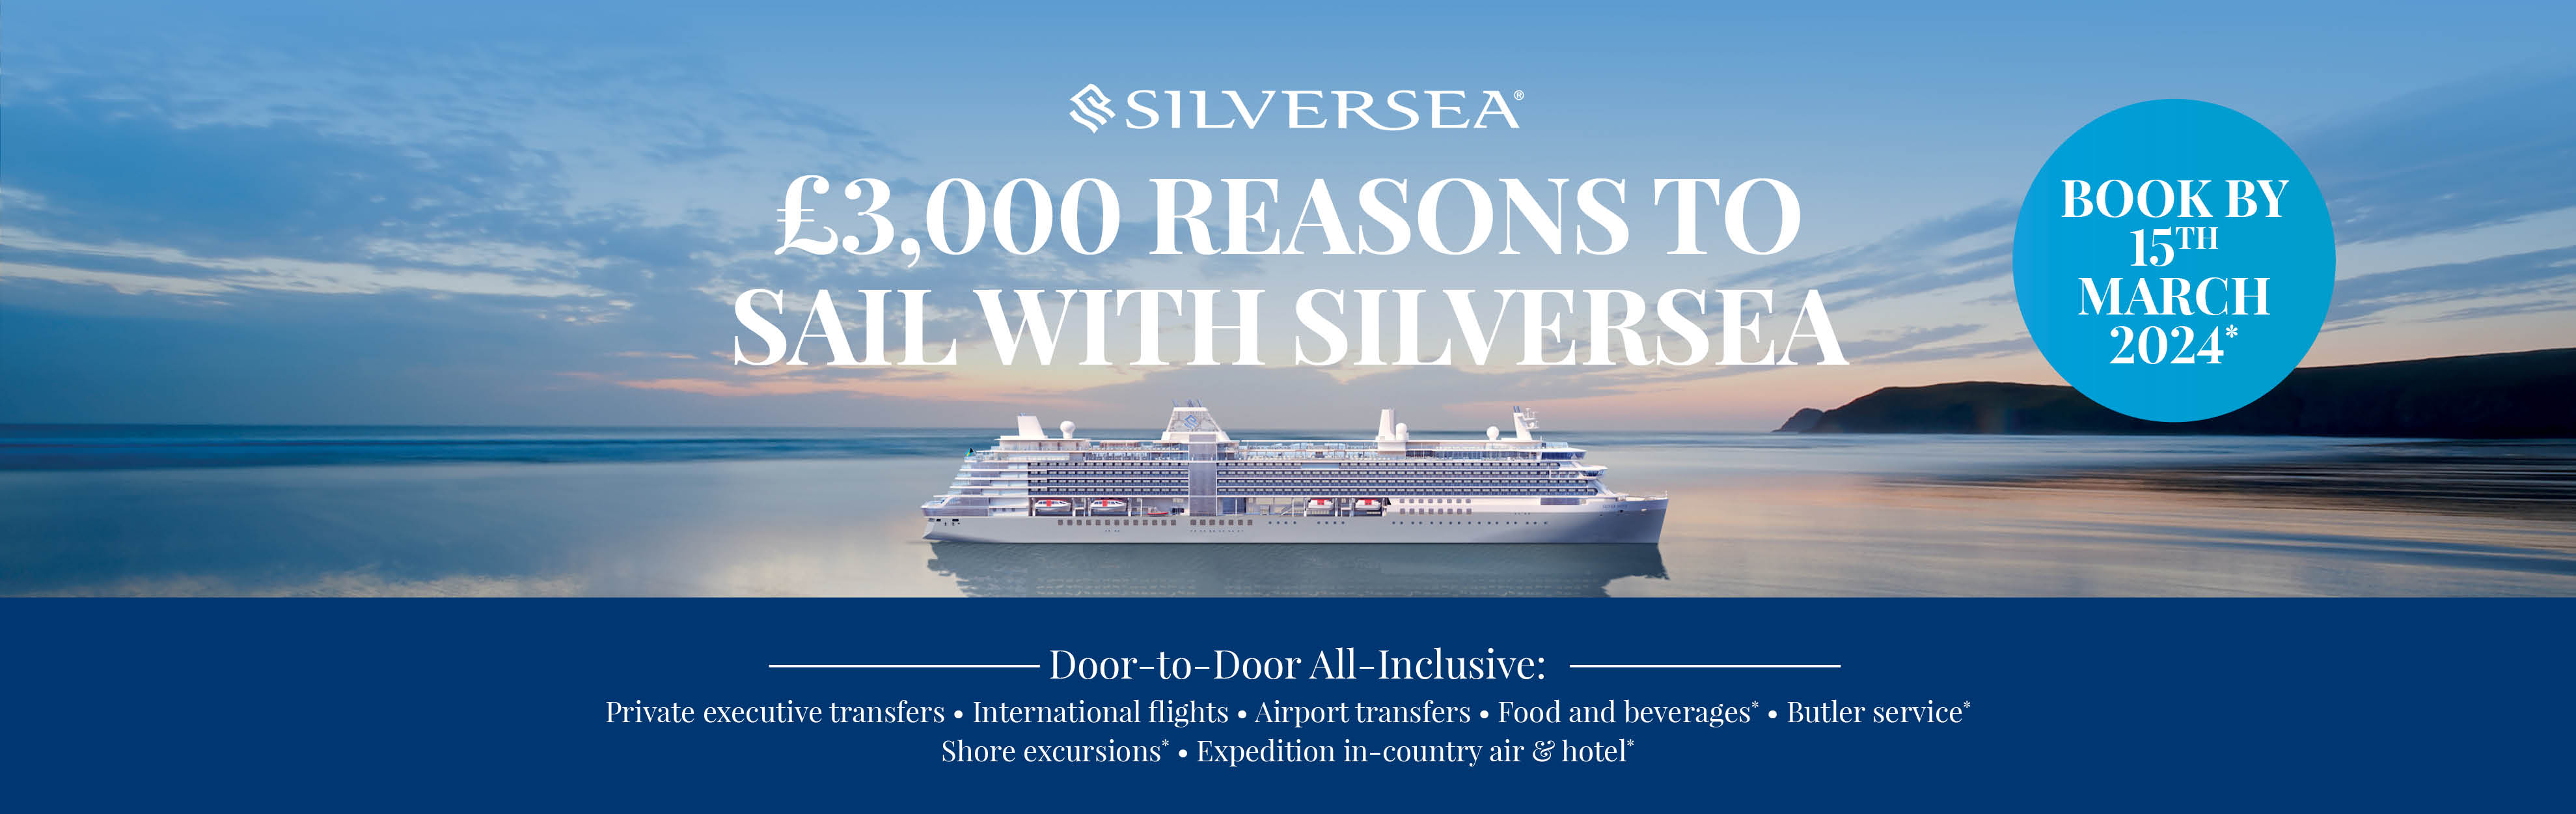 Silversea Cruises Campaign